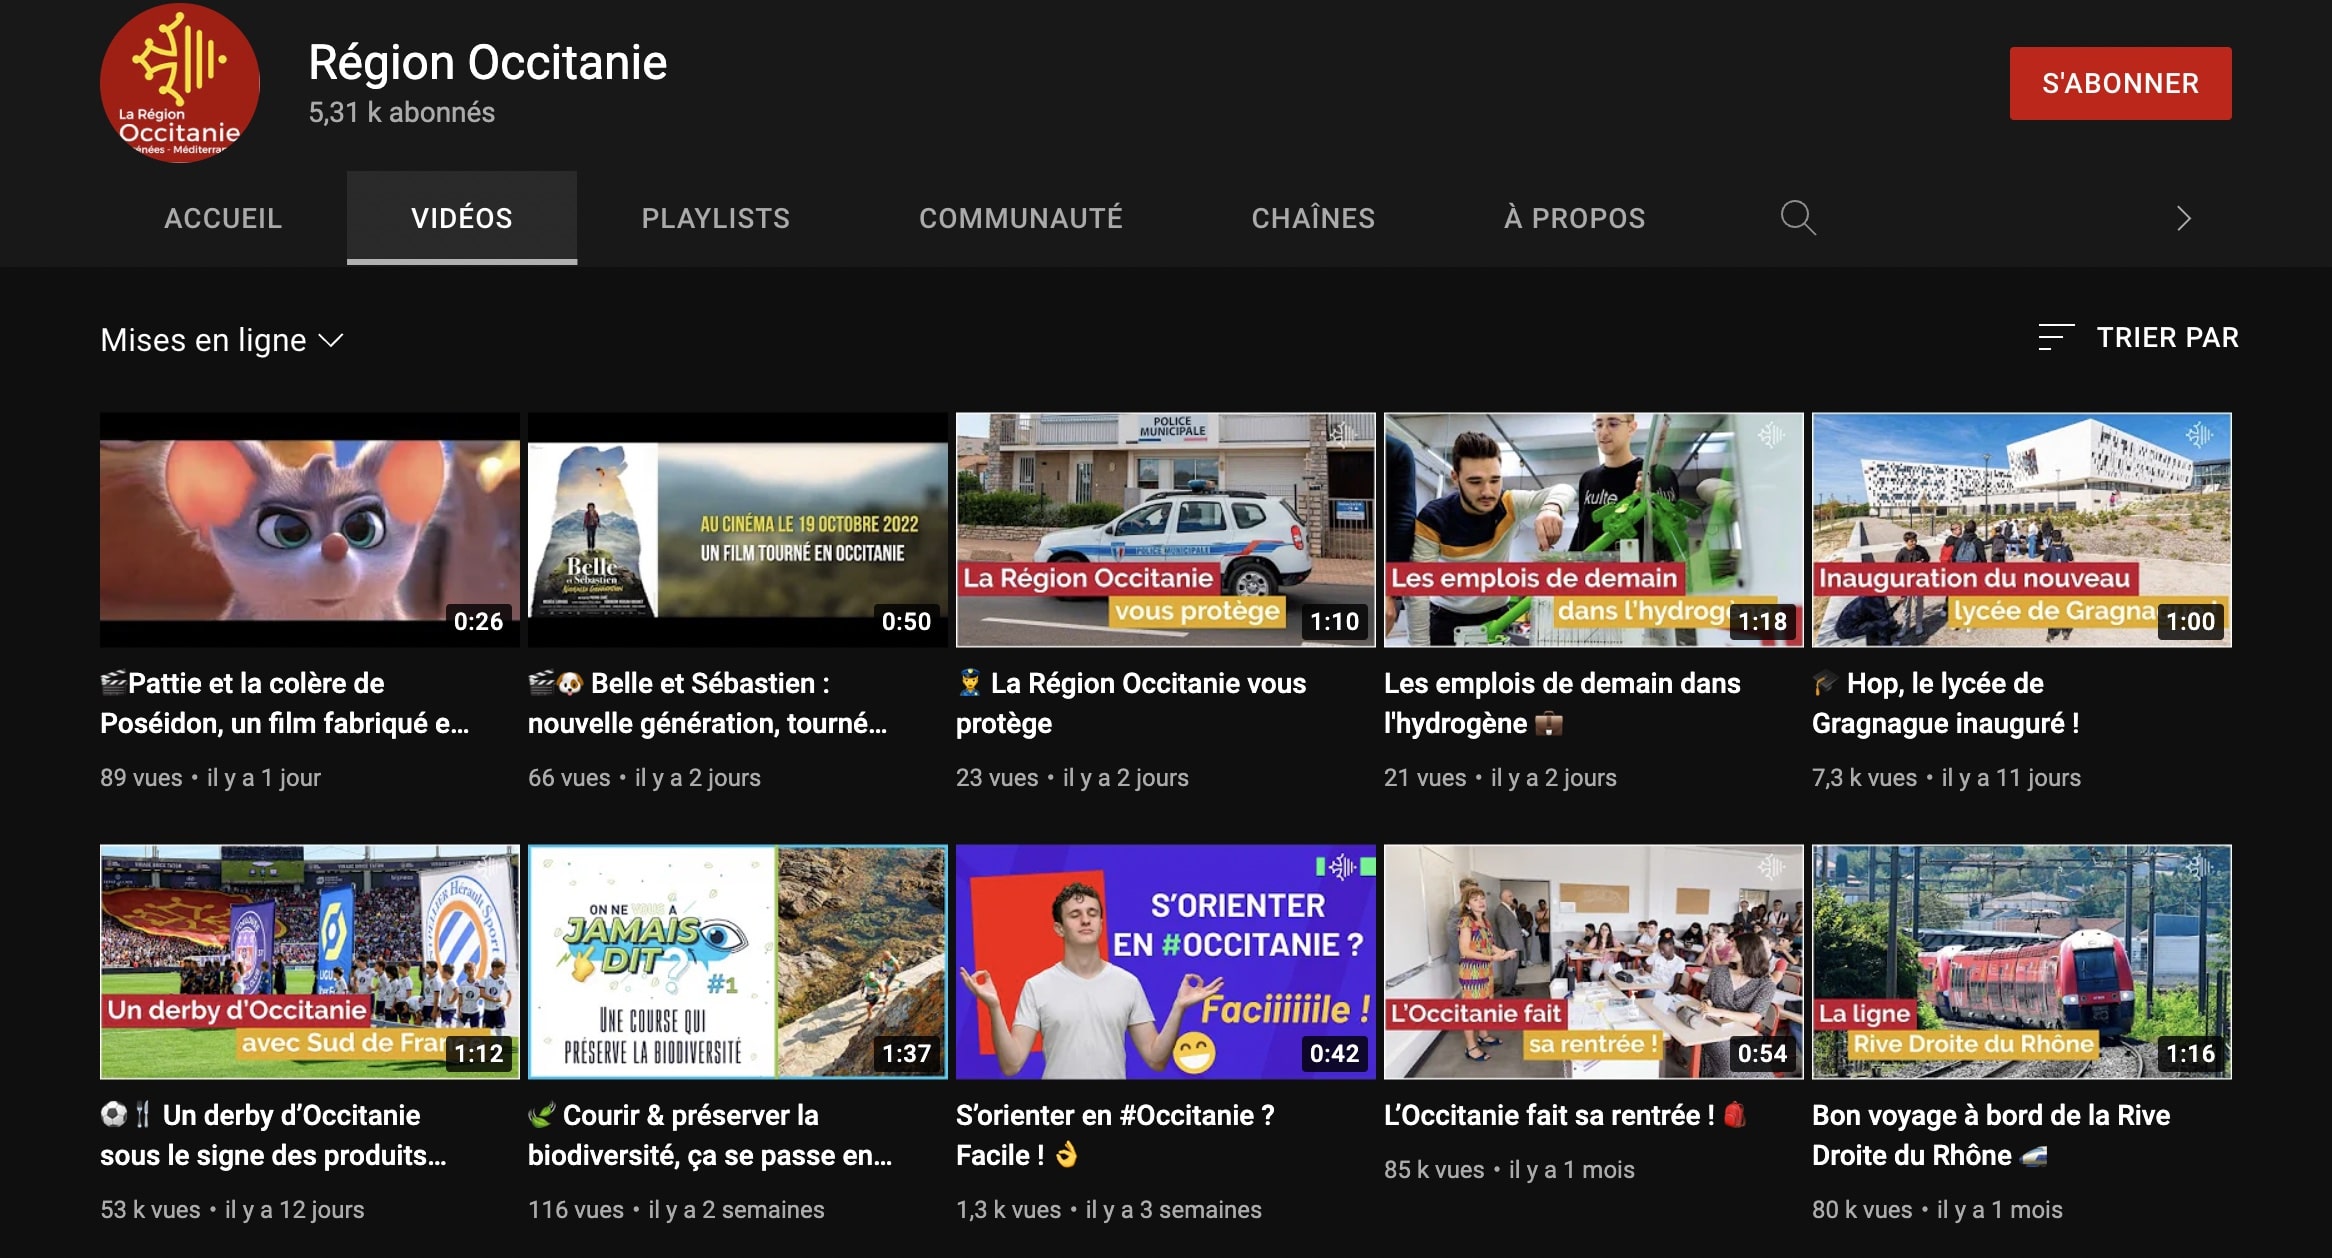 Collectivités locales - région Occitanie sur YouTube